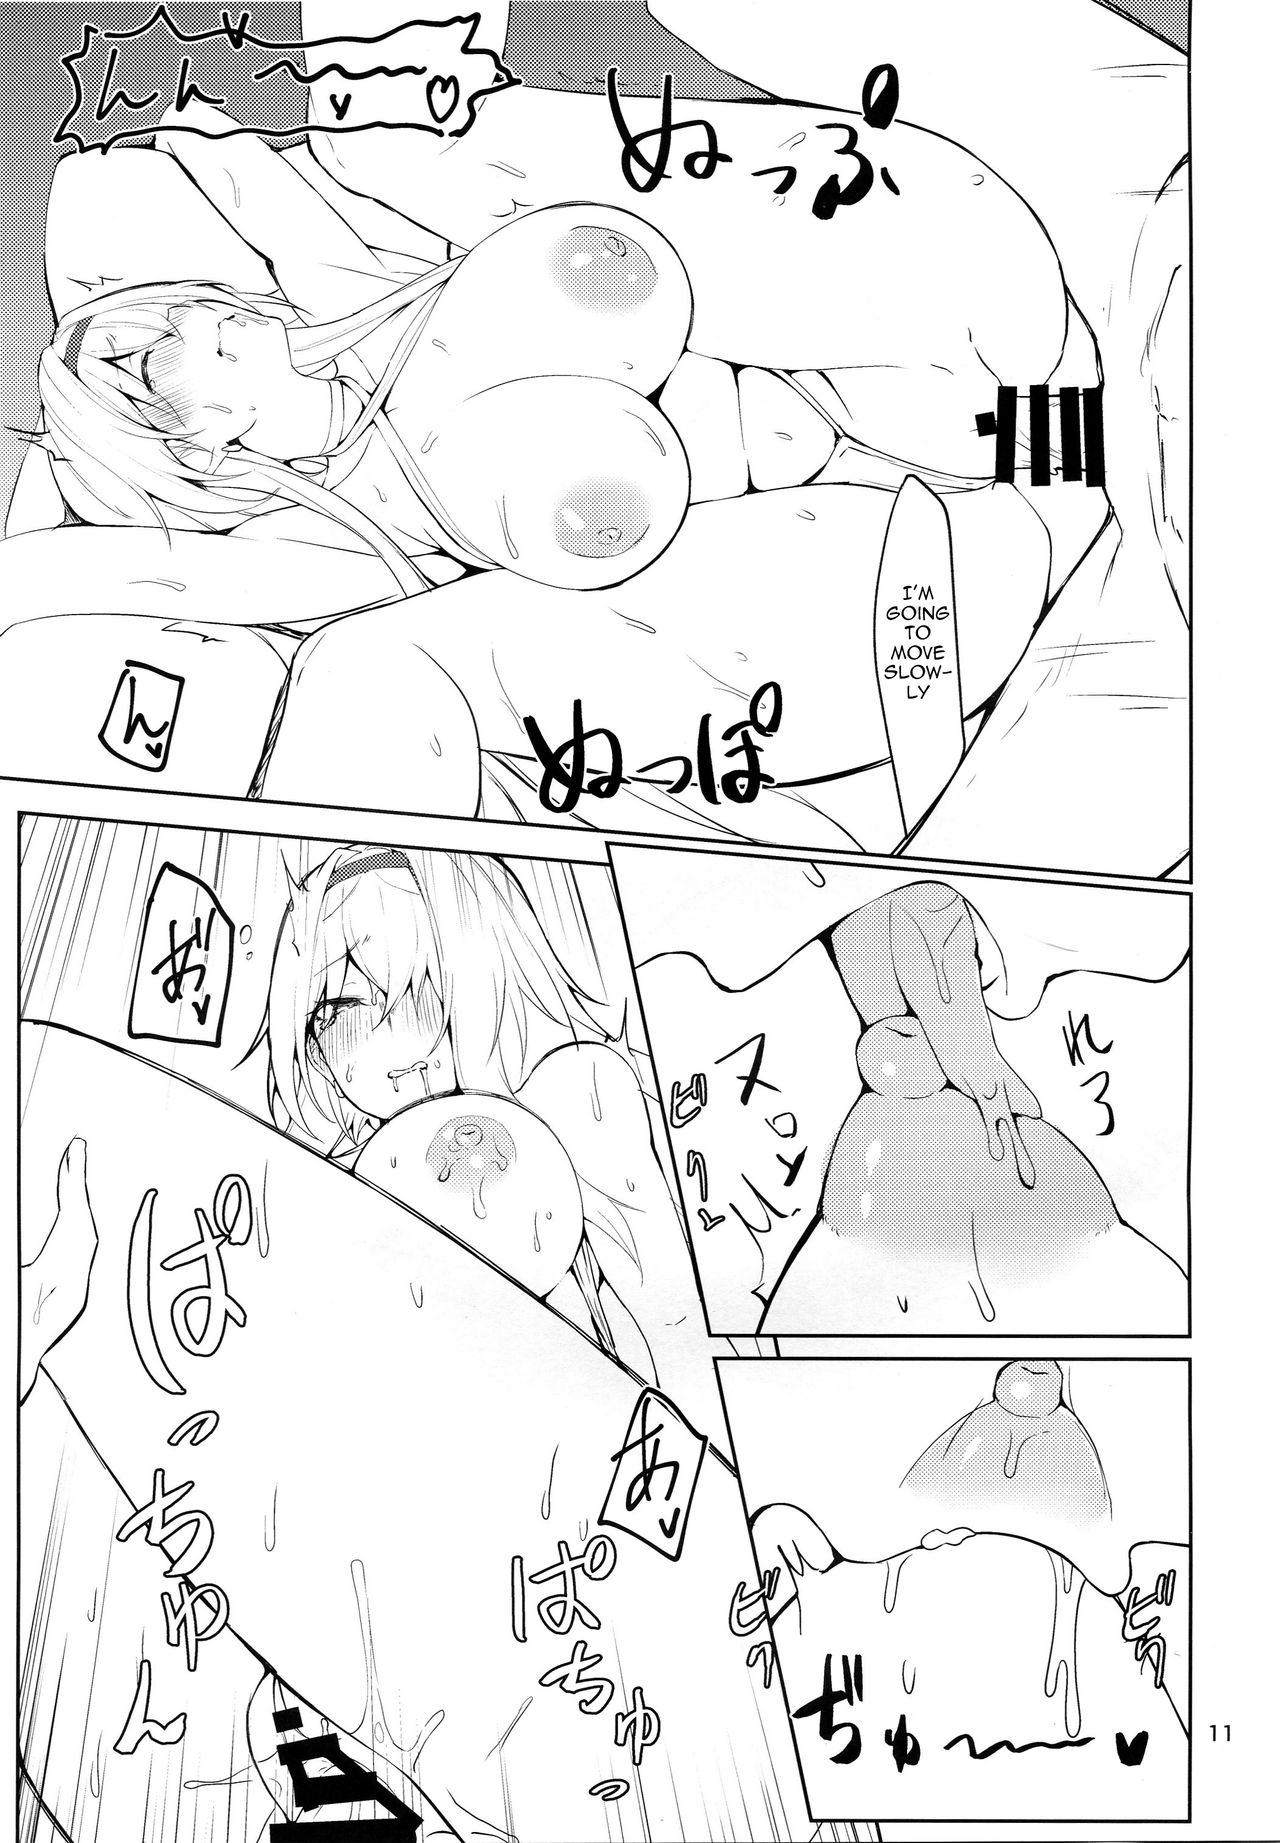 Hotfuck Tsuyo-sa no Himitsu 3rd - Azur lane Swallow - Page 10